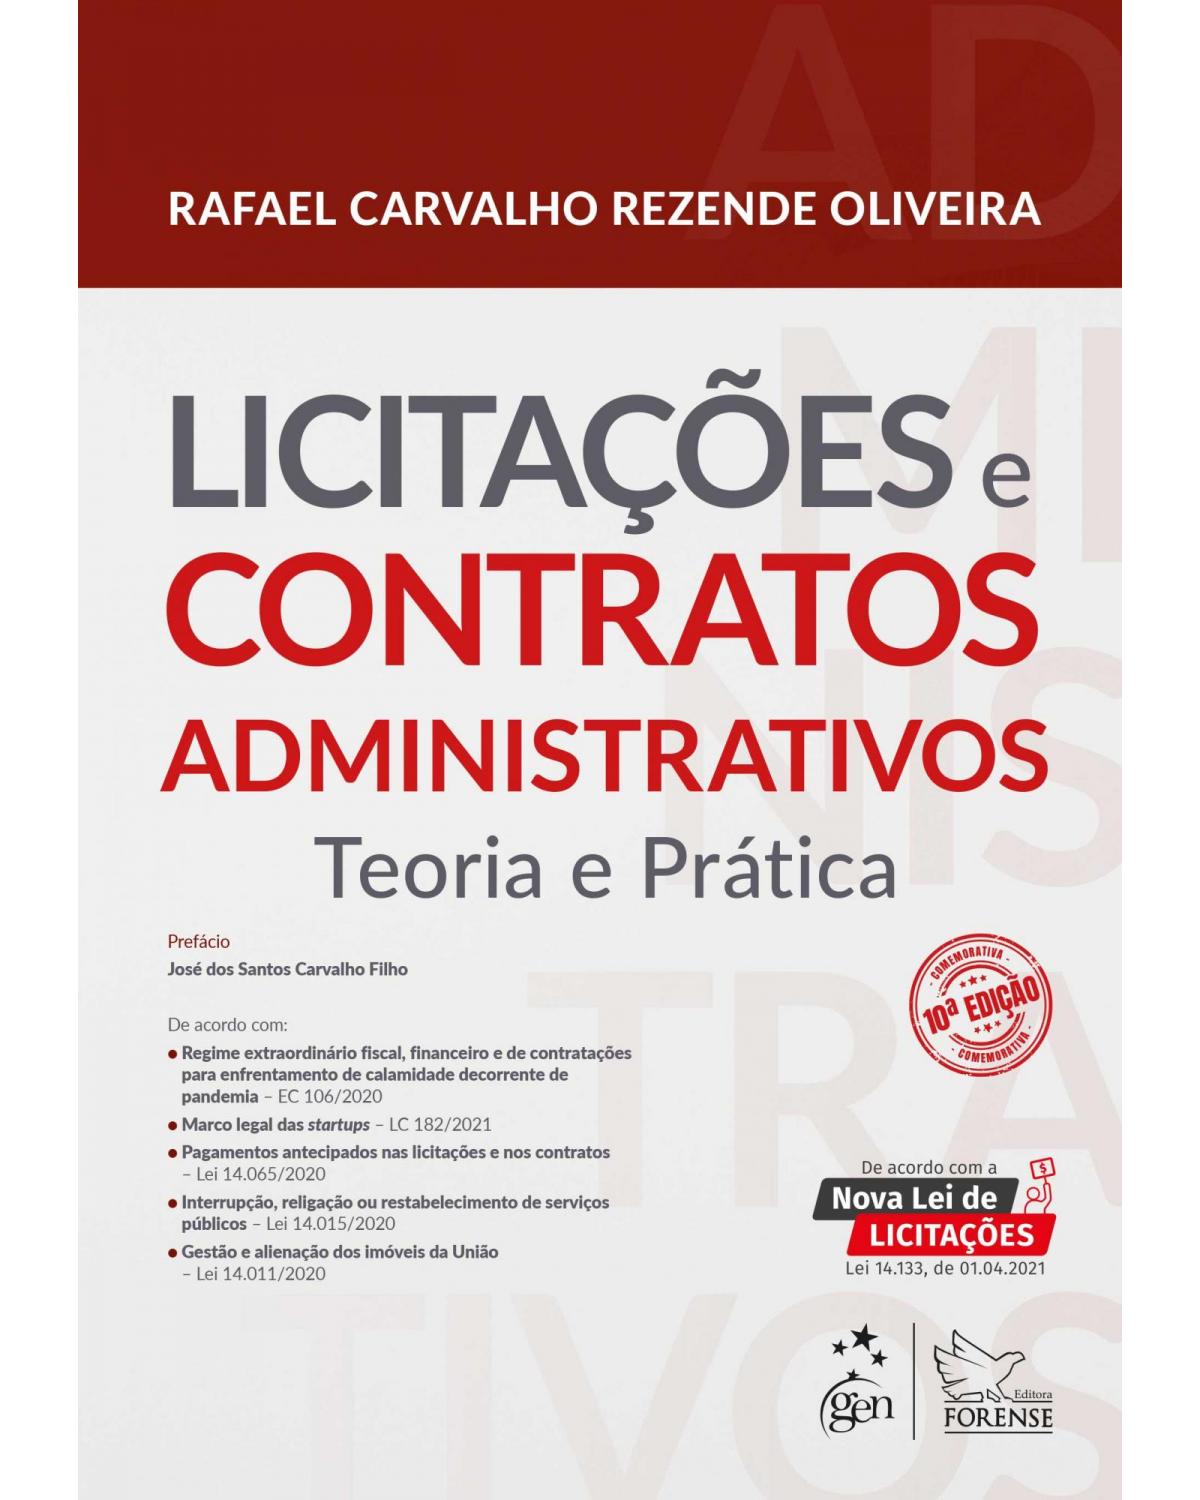 Licitações e Contratos Administrativos - Teoria e Prática - teoria e prática - 10ª Edição | 2021